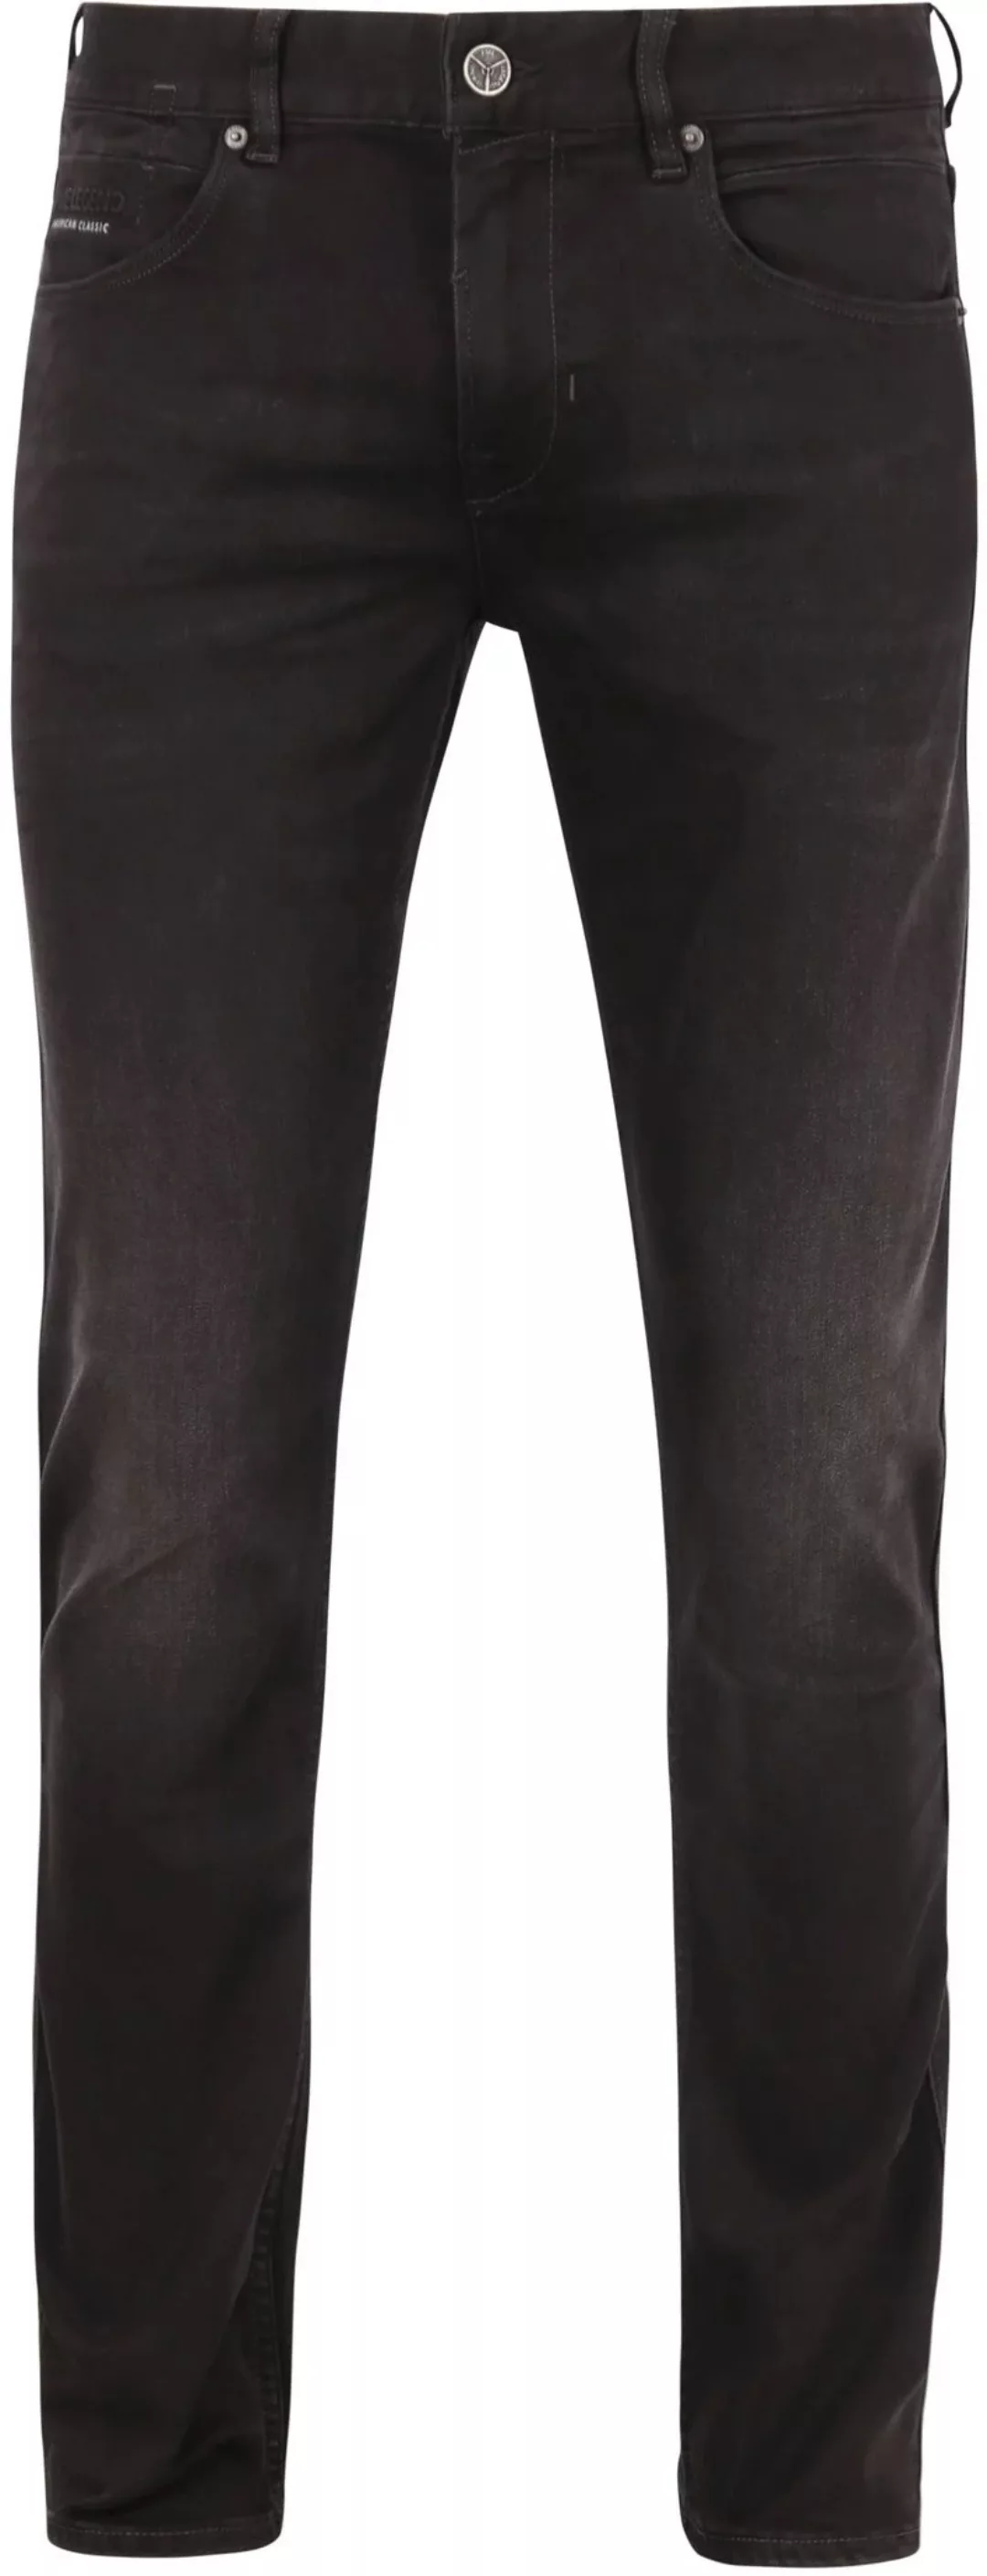 PME Legend Nightflight Jeans Schwarz RBD - Größe W 36 - L 34 günstig online kaufen